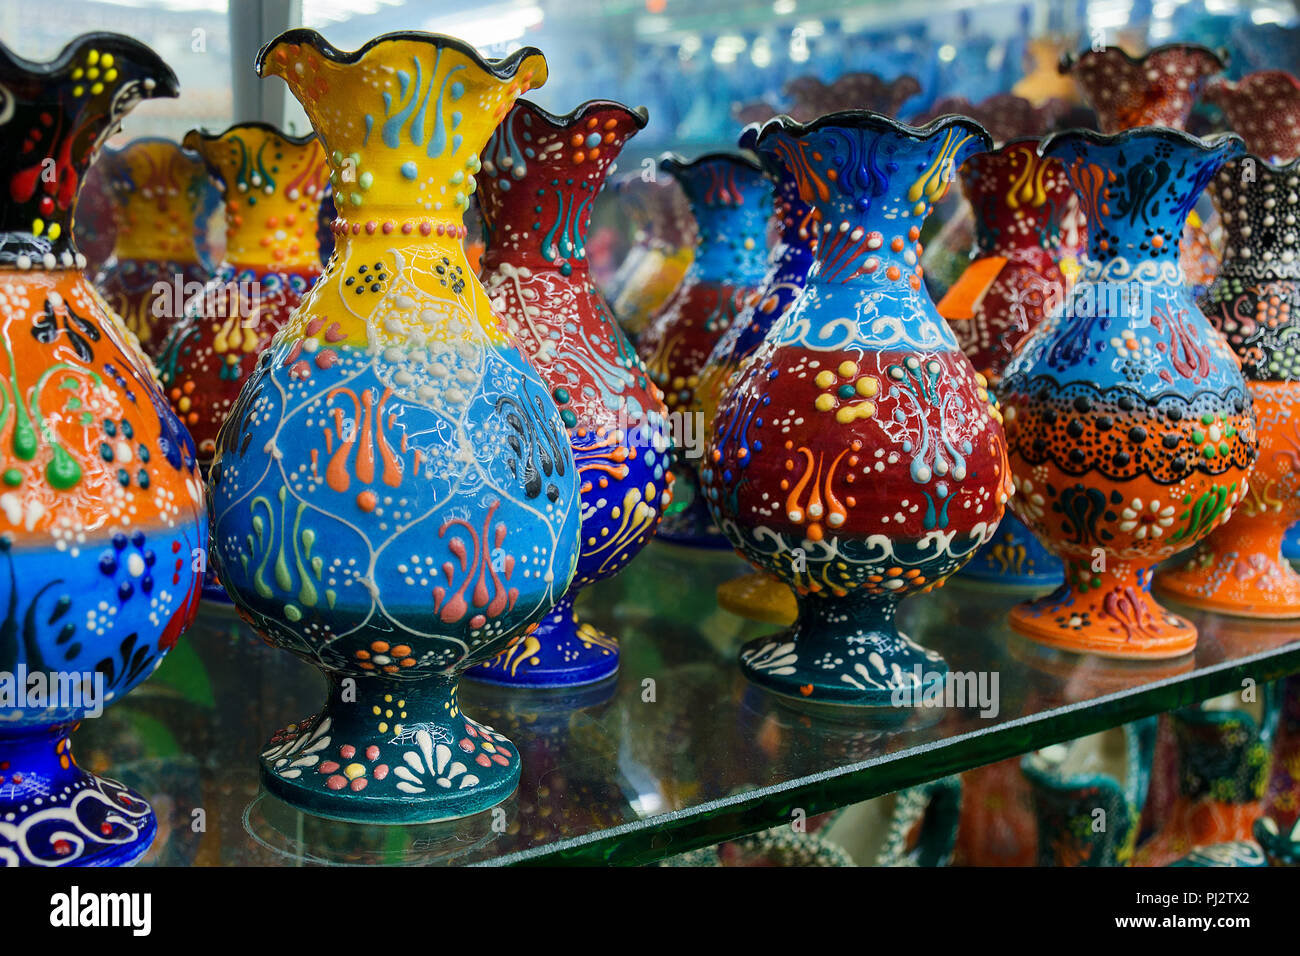 https://c8.alamy.com/compes/pj2tx2/colorido-hermoso-jarron-con-flores-tradicionales-turcas-ornamentado-pintura-sobre-los-platos-tienda-de-souvenirs-pj2tx2.jpg